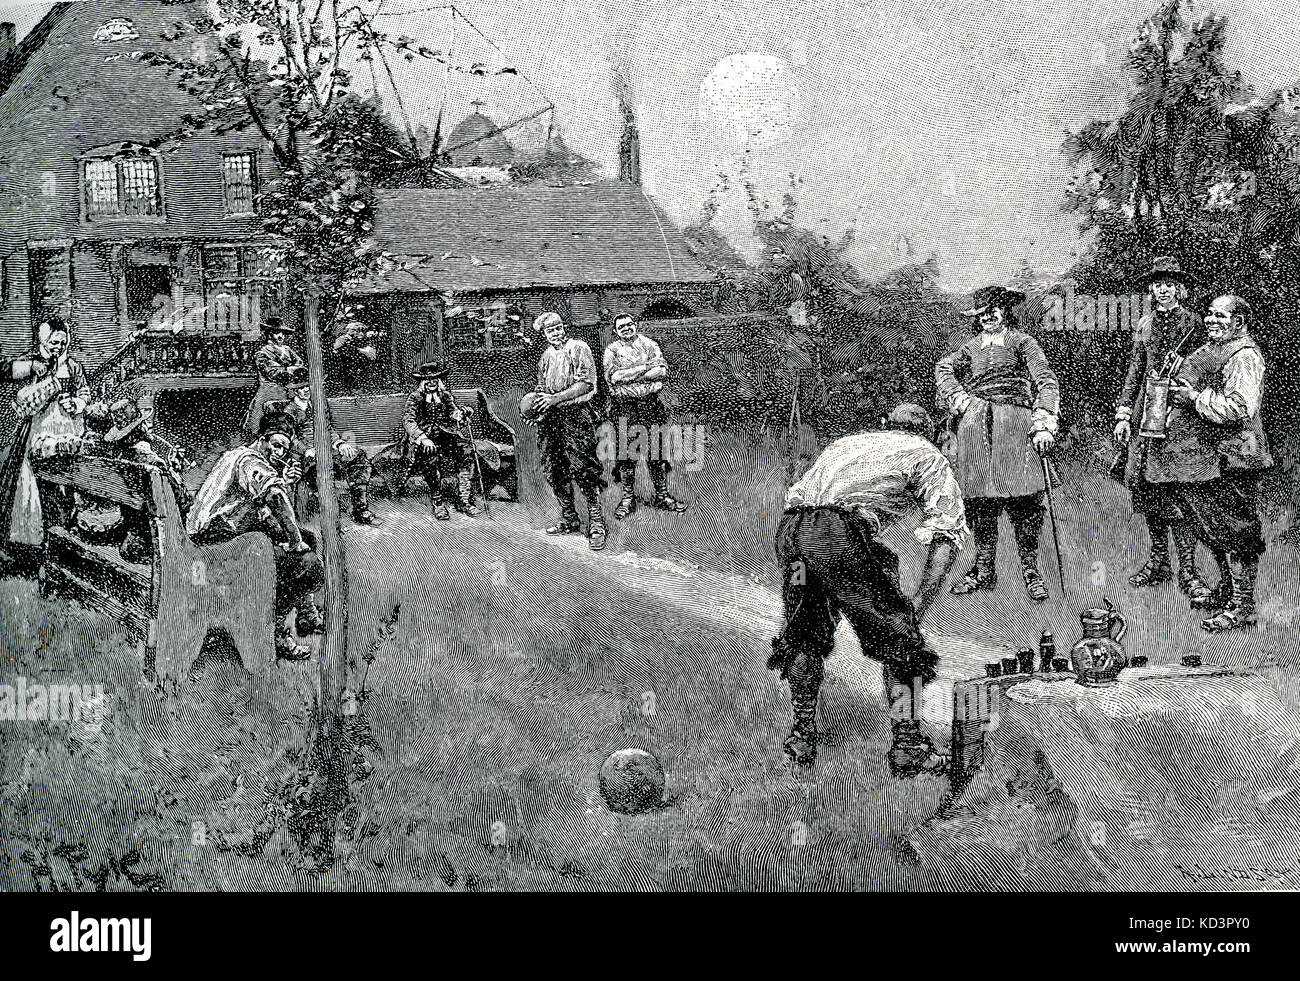 Cittadini olandesi di New Amsterdam (ora New York), giocare a boules in una locanda, 1650. Coloni olandesi, Nord America. Illustrazione di Howard Pyle, 1883 Foto Stock